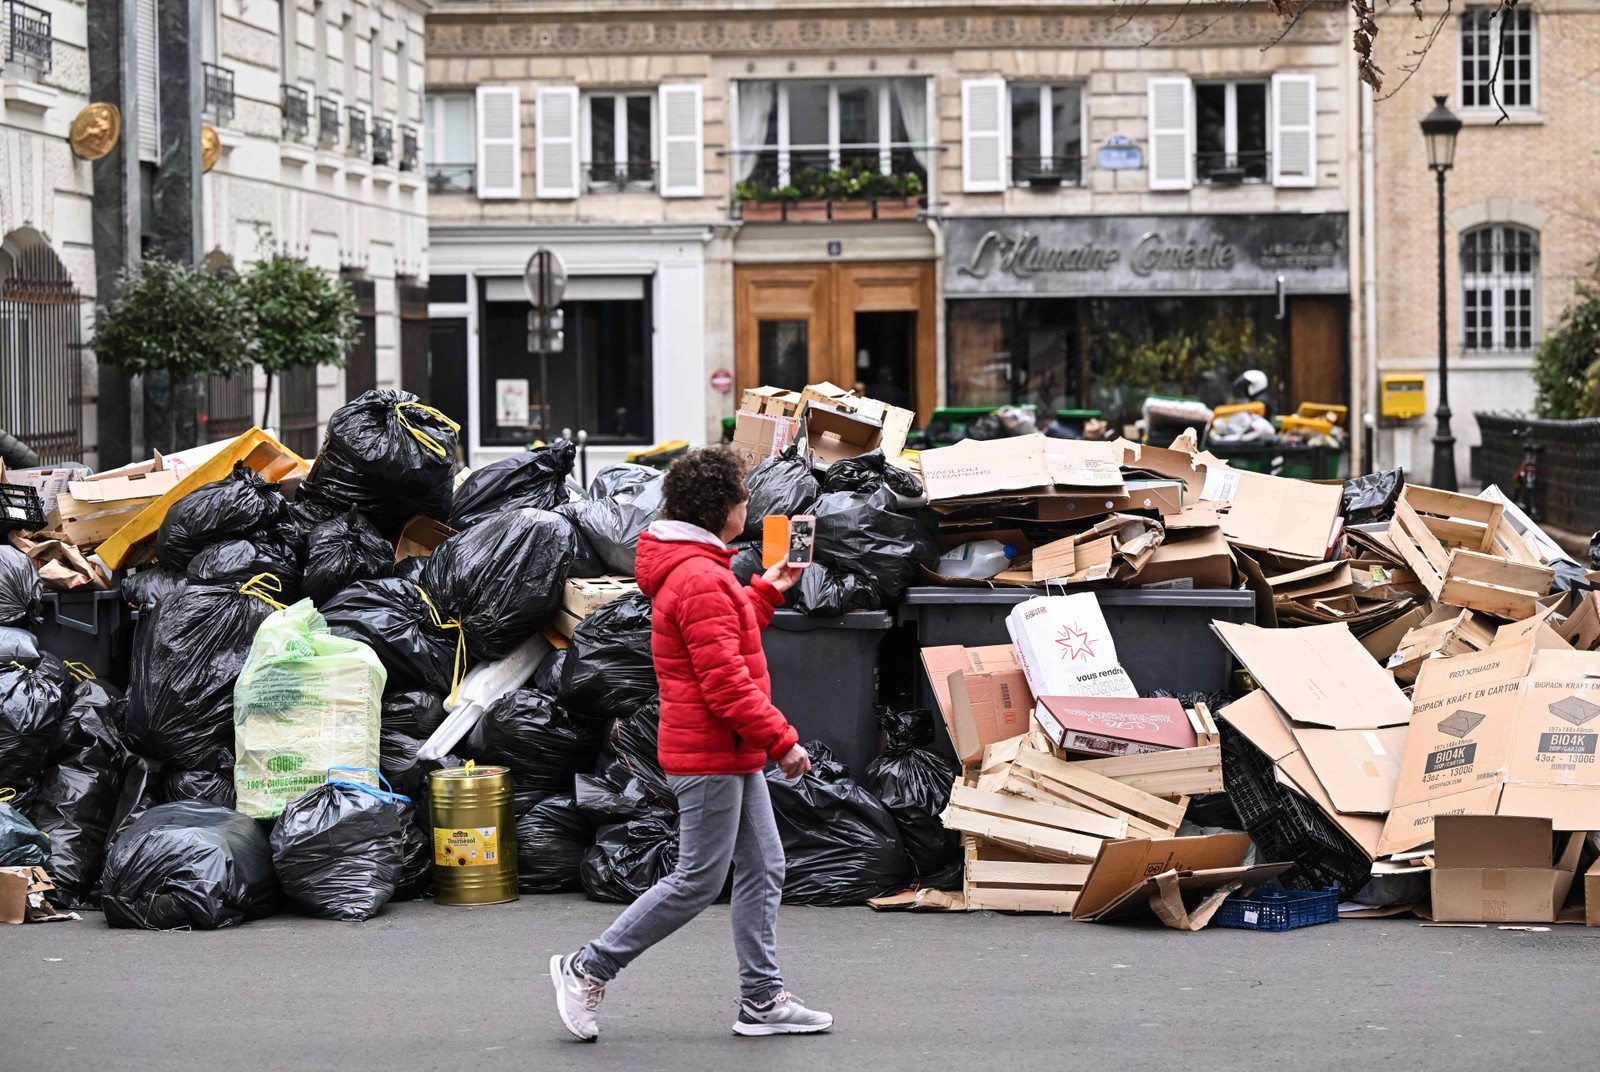 Pedestre passa por um monte de lixo acumulado em uma rua de Paris, durante greve contra a reforma previdenciária proposta pelo governo francês — Foto: Stefano RELLANDINI / AFP